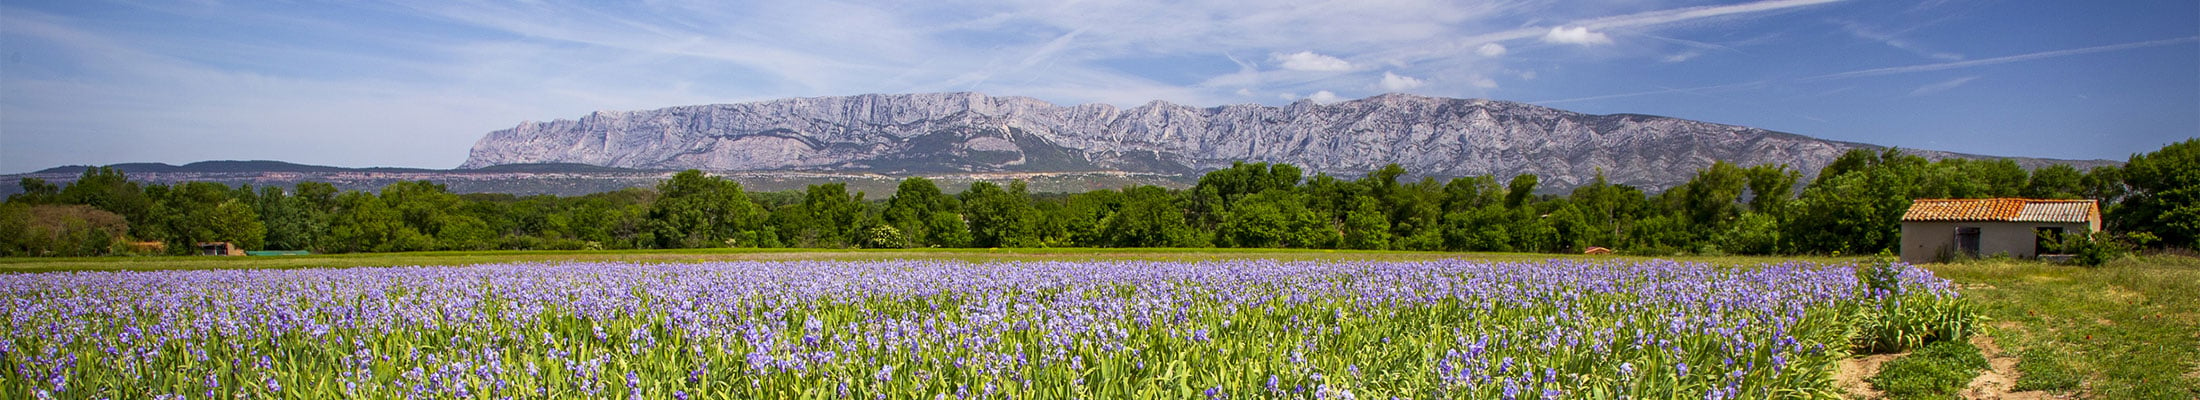 La montagne de la Sainte Victoire à Aix en Provence